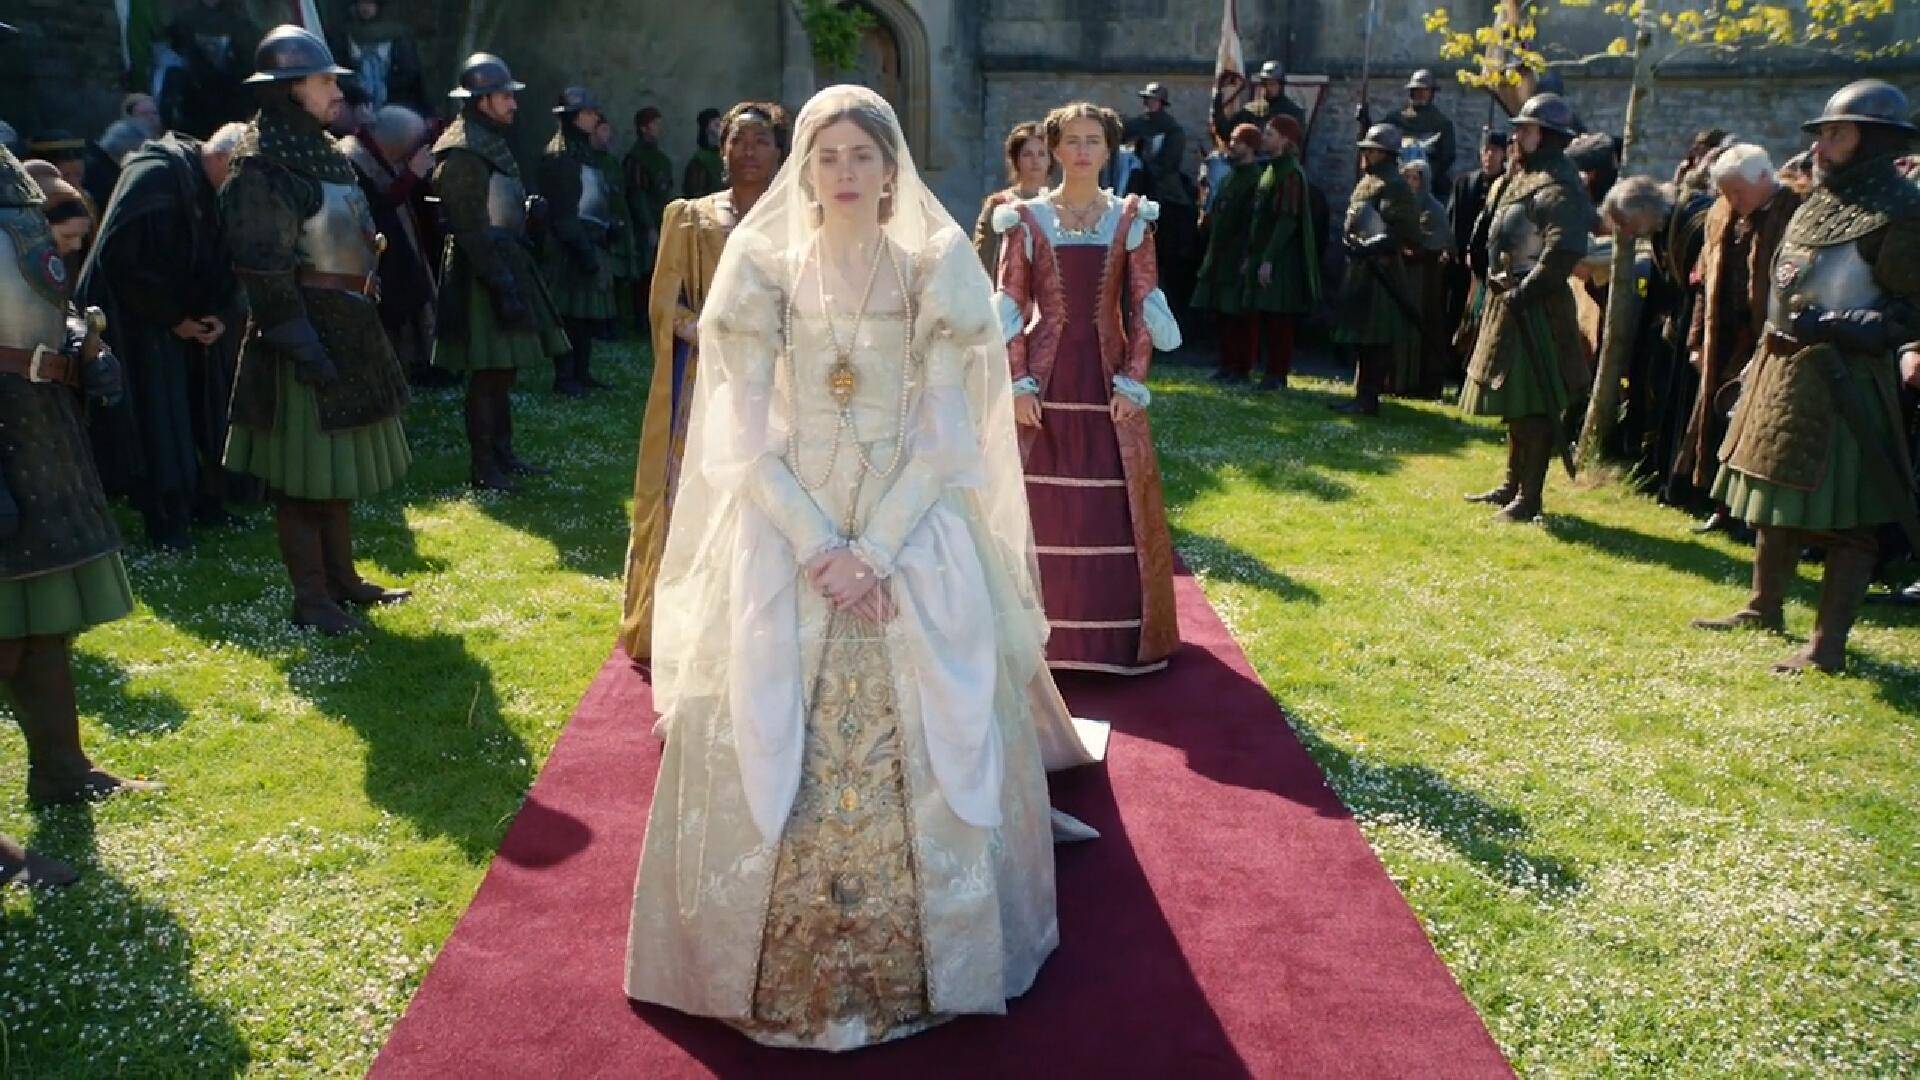 图 / 西班牙公主图 / 西班牙公主图 / 西班牙公主欧洲宫廷传统婚纱